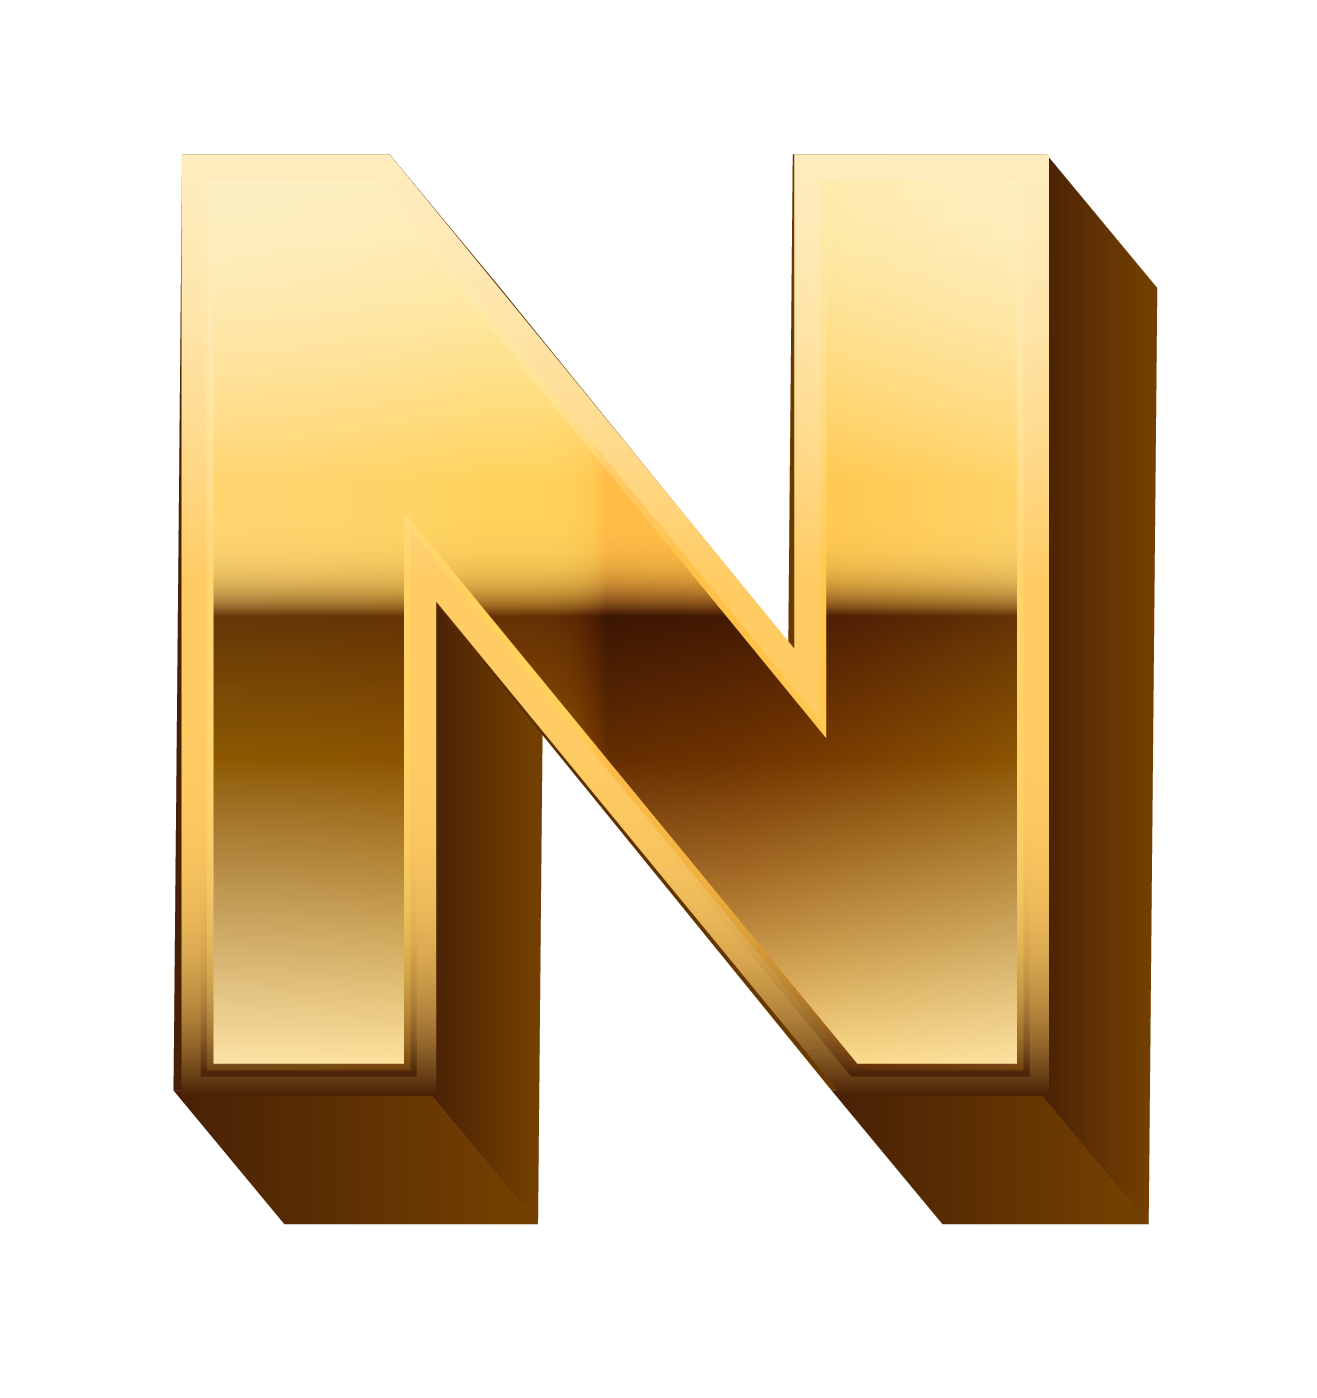 N. Буква n. Объемная буква n. Трёхмерная буква n. Буква n на прозрачном фоне.